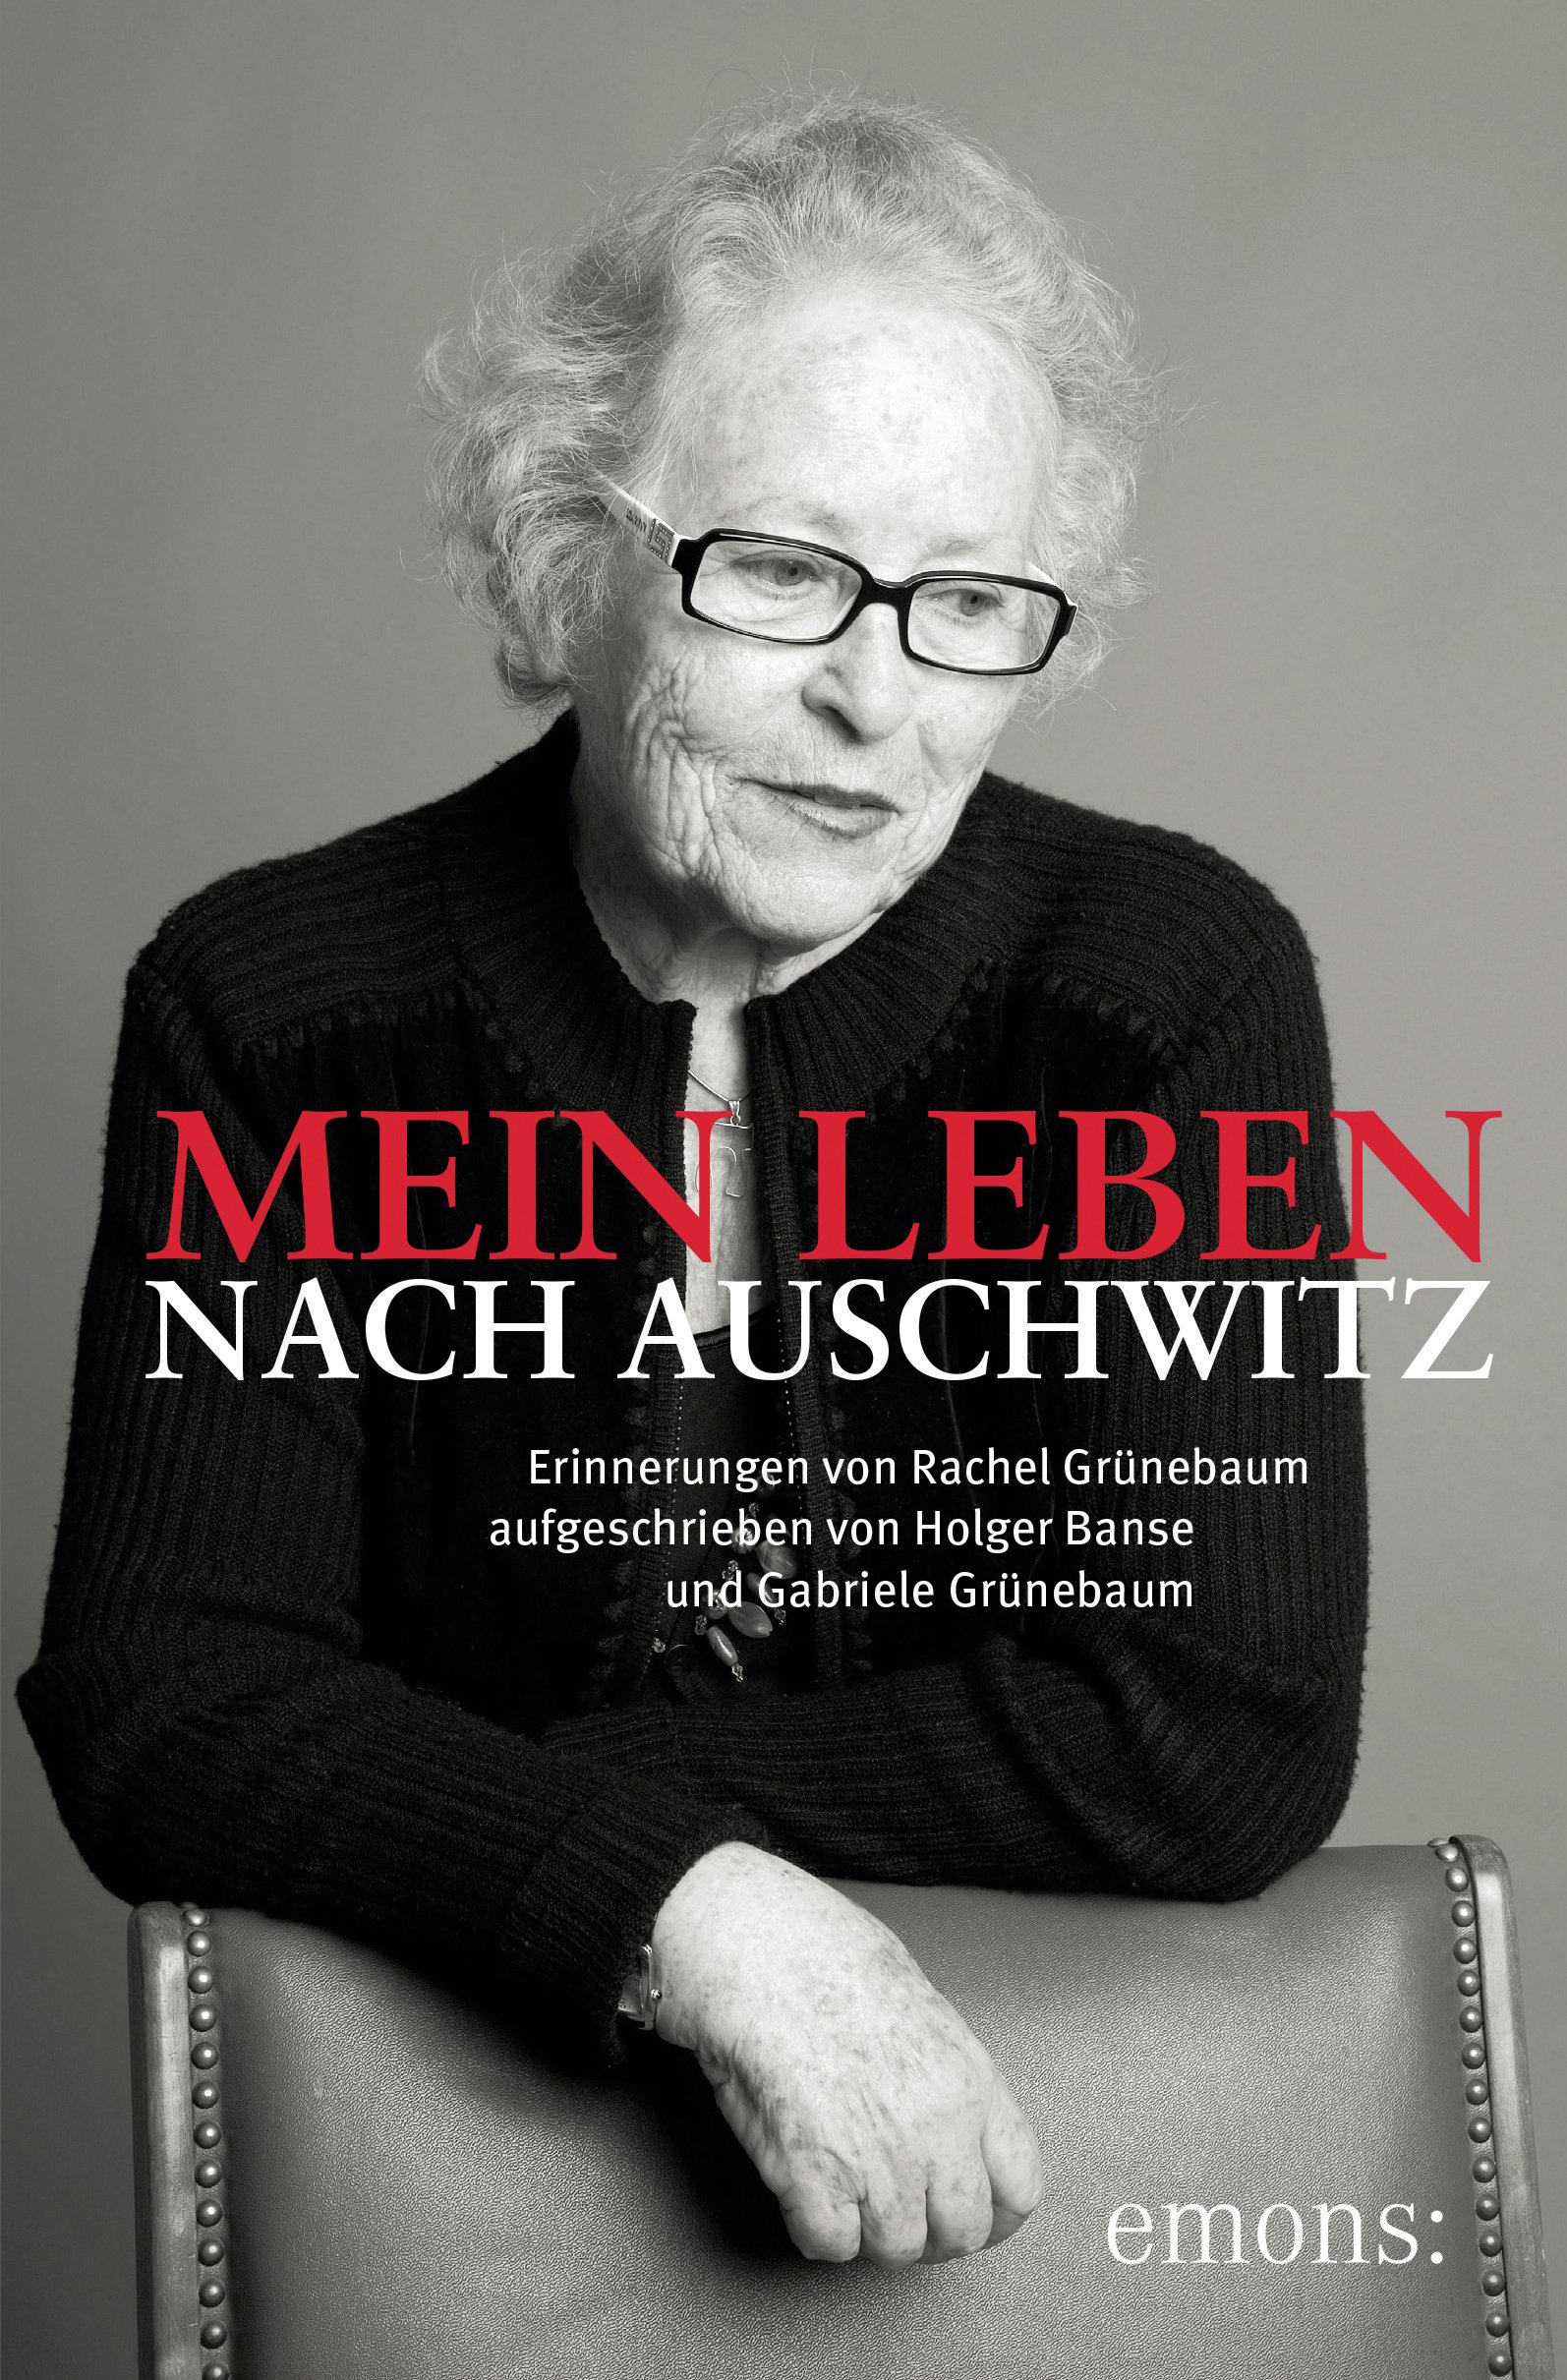 Buchvorstellung: Mein Leben nach Auschwitz: Erinnerungen von Rachel Grünbaum